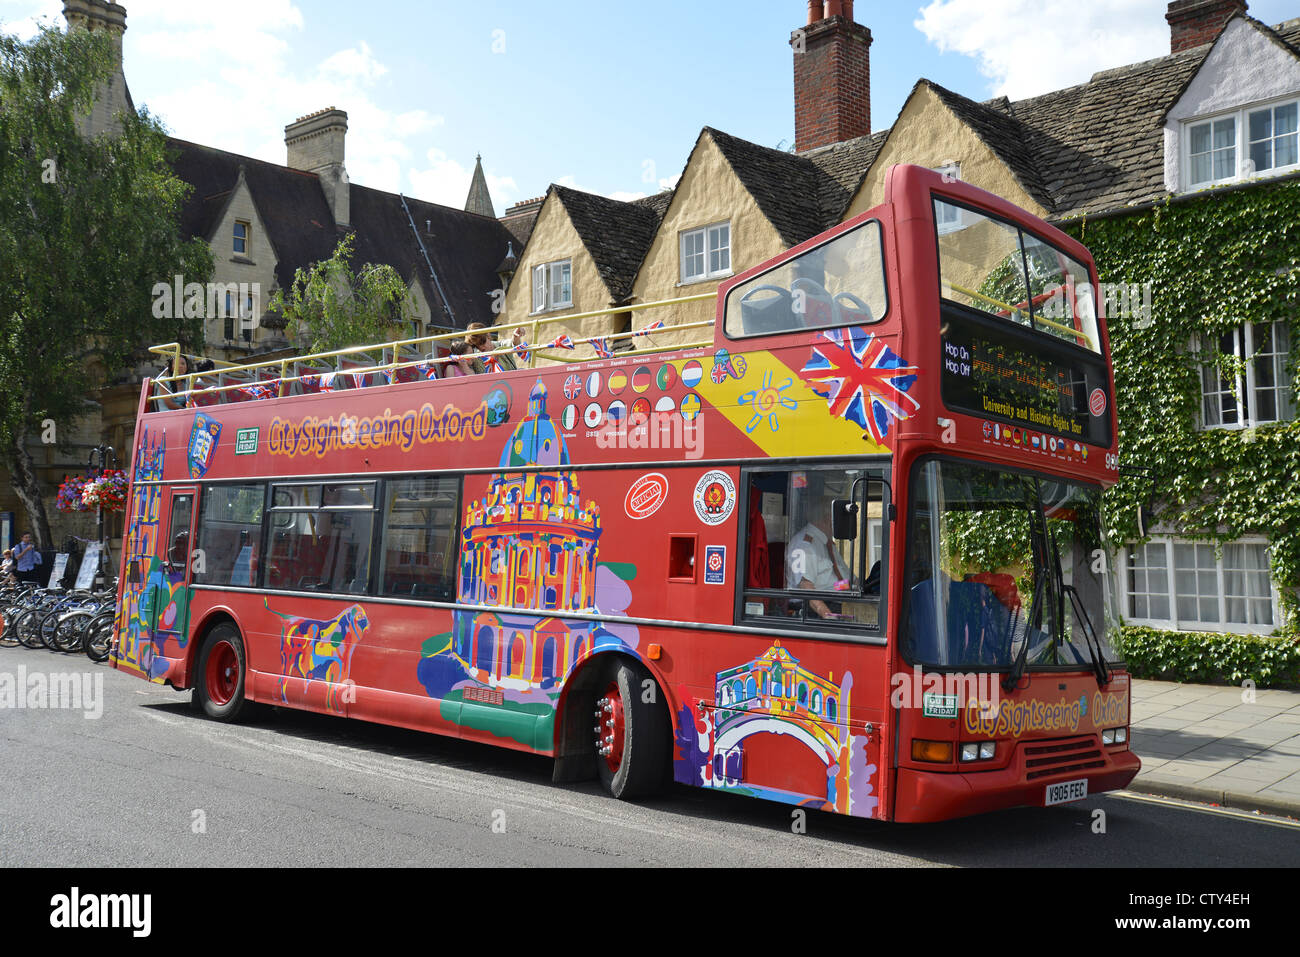 Bus de tourisme de la ville, Broad Street, Oxford, Oxfordshire, Angleterre, Royaume-Uni Banque D'Images